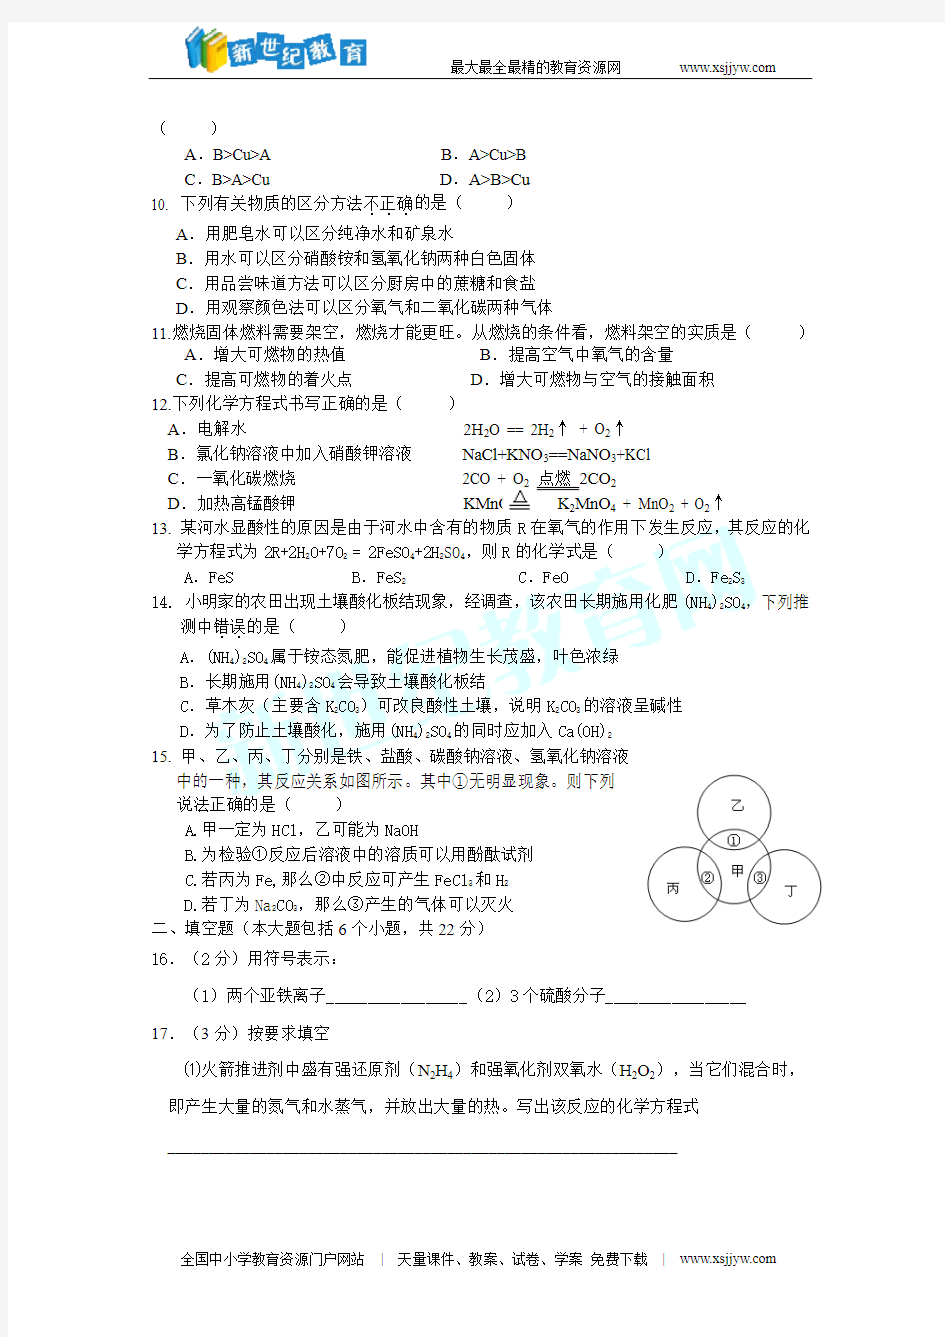 重庆巴蜀中学初2011级10-11学年(下)一模试题——化学(缺答案)